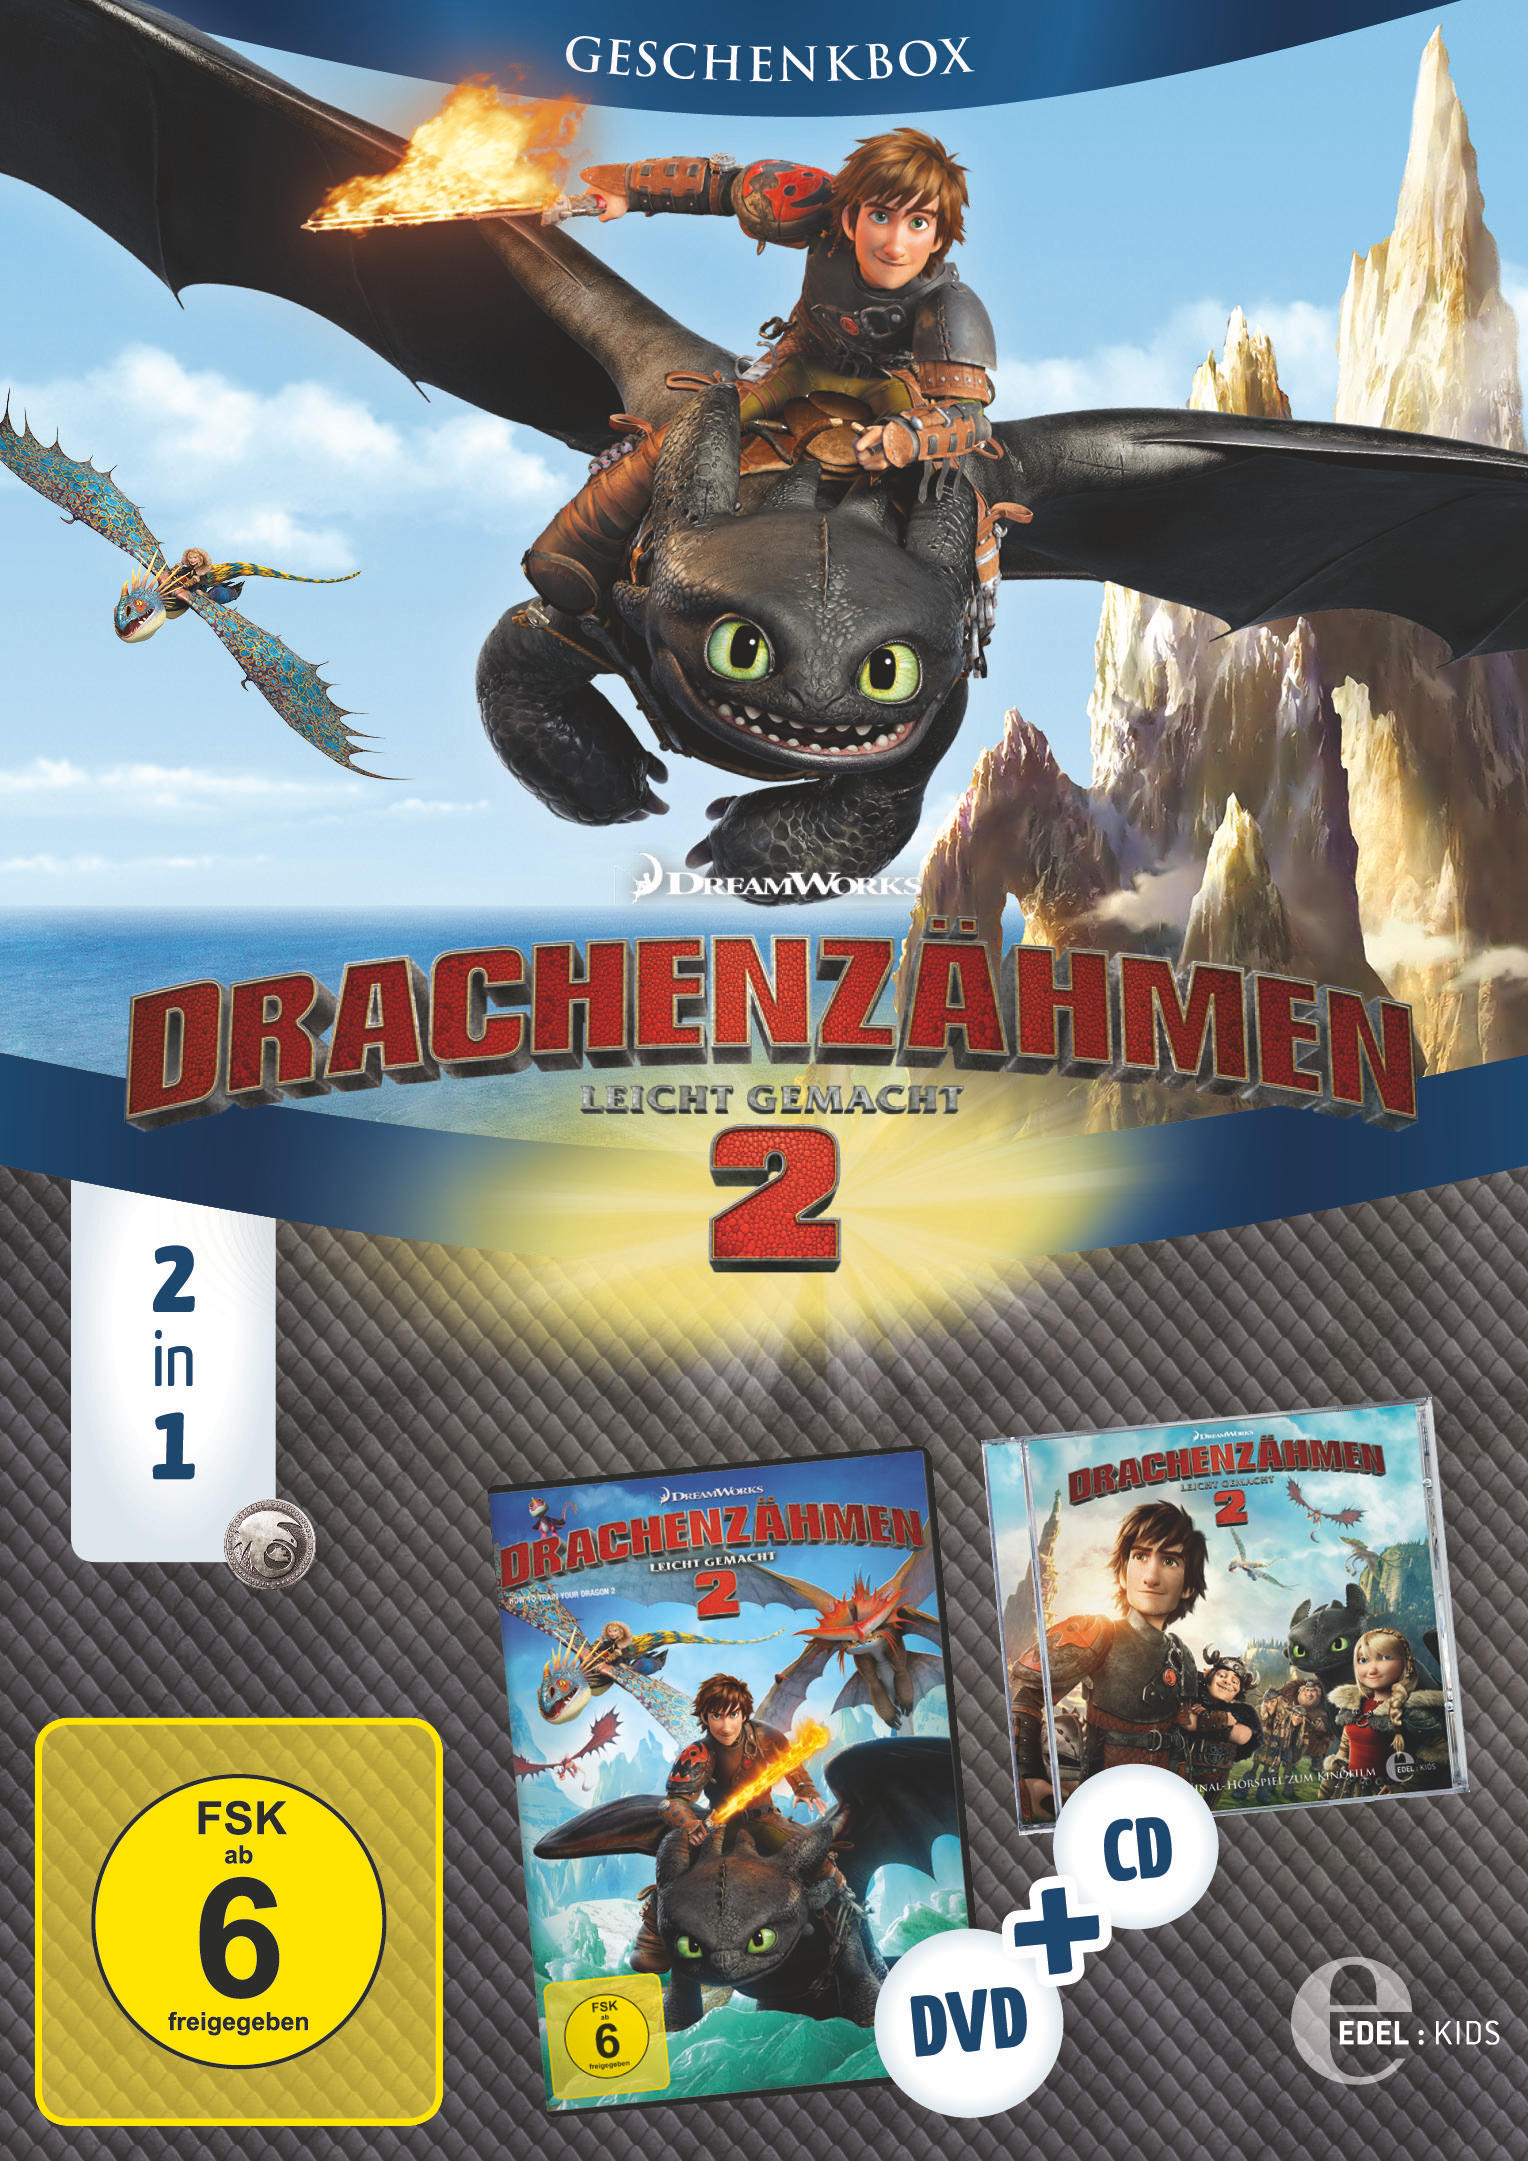 Drachenzähmen leicht gemacht 2 - CD DVD zum & Geschenkbox) Hörspiel Kinofilm + 2in1 (Exklusive Kinofilm